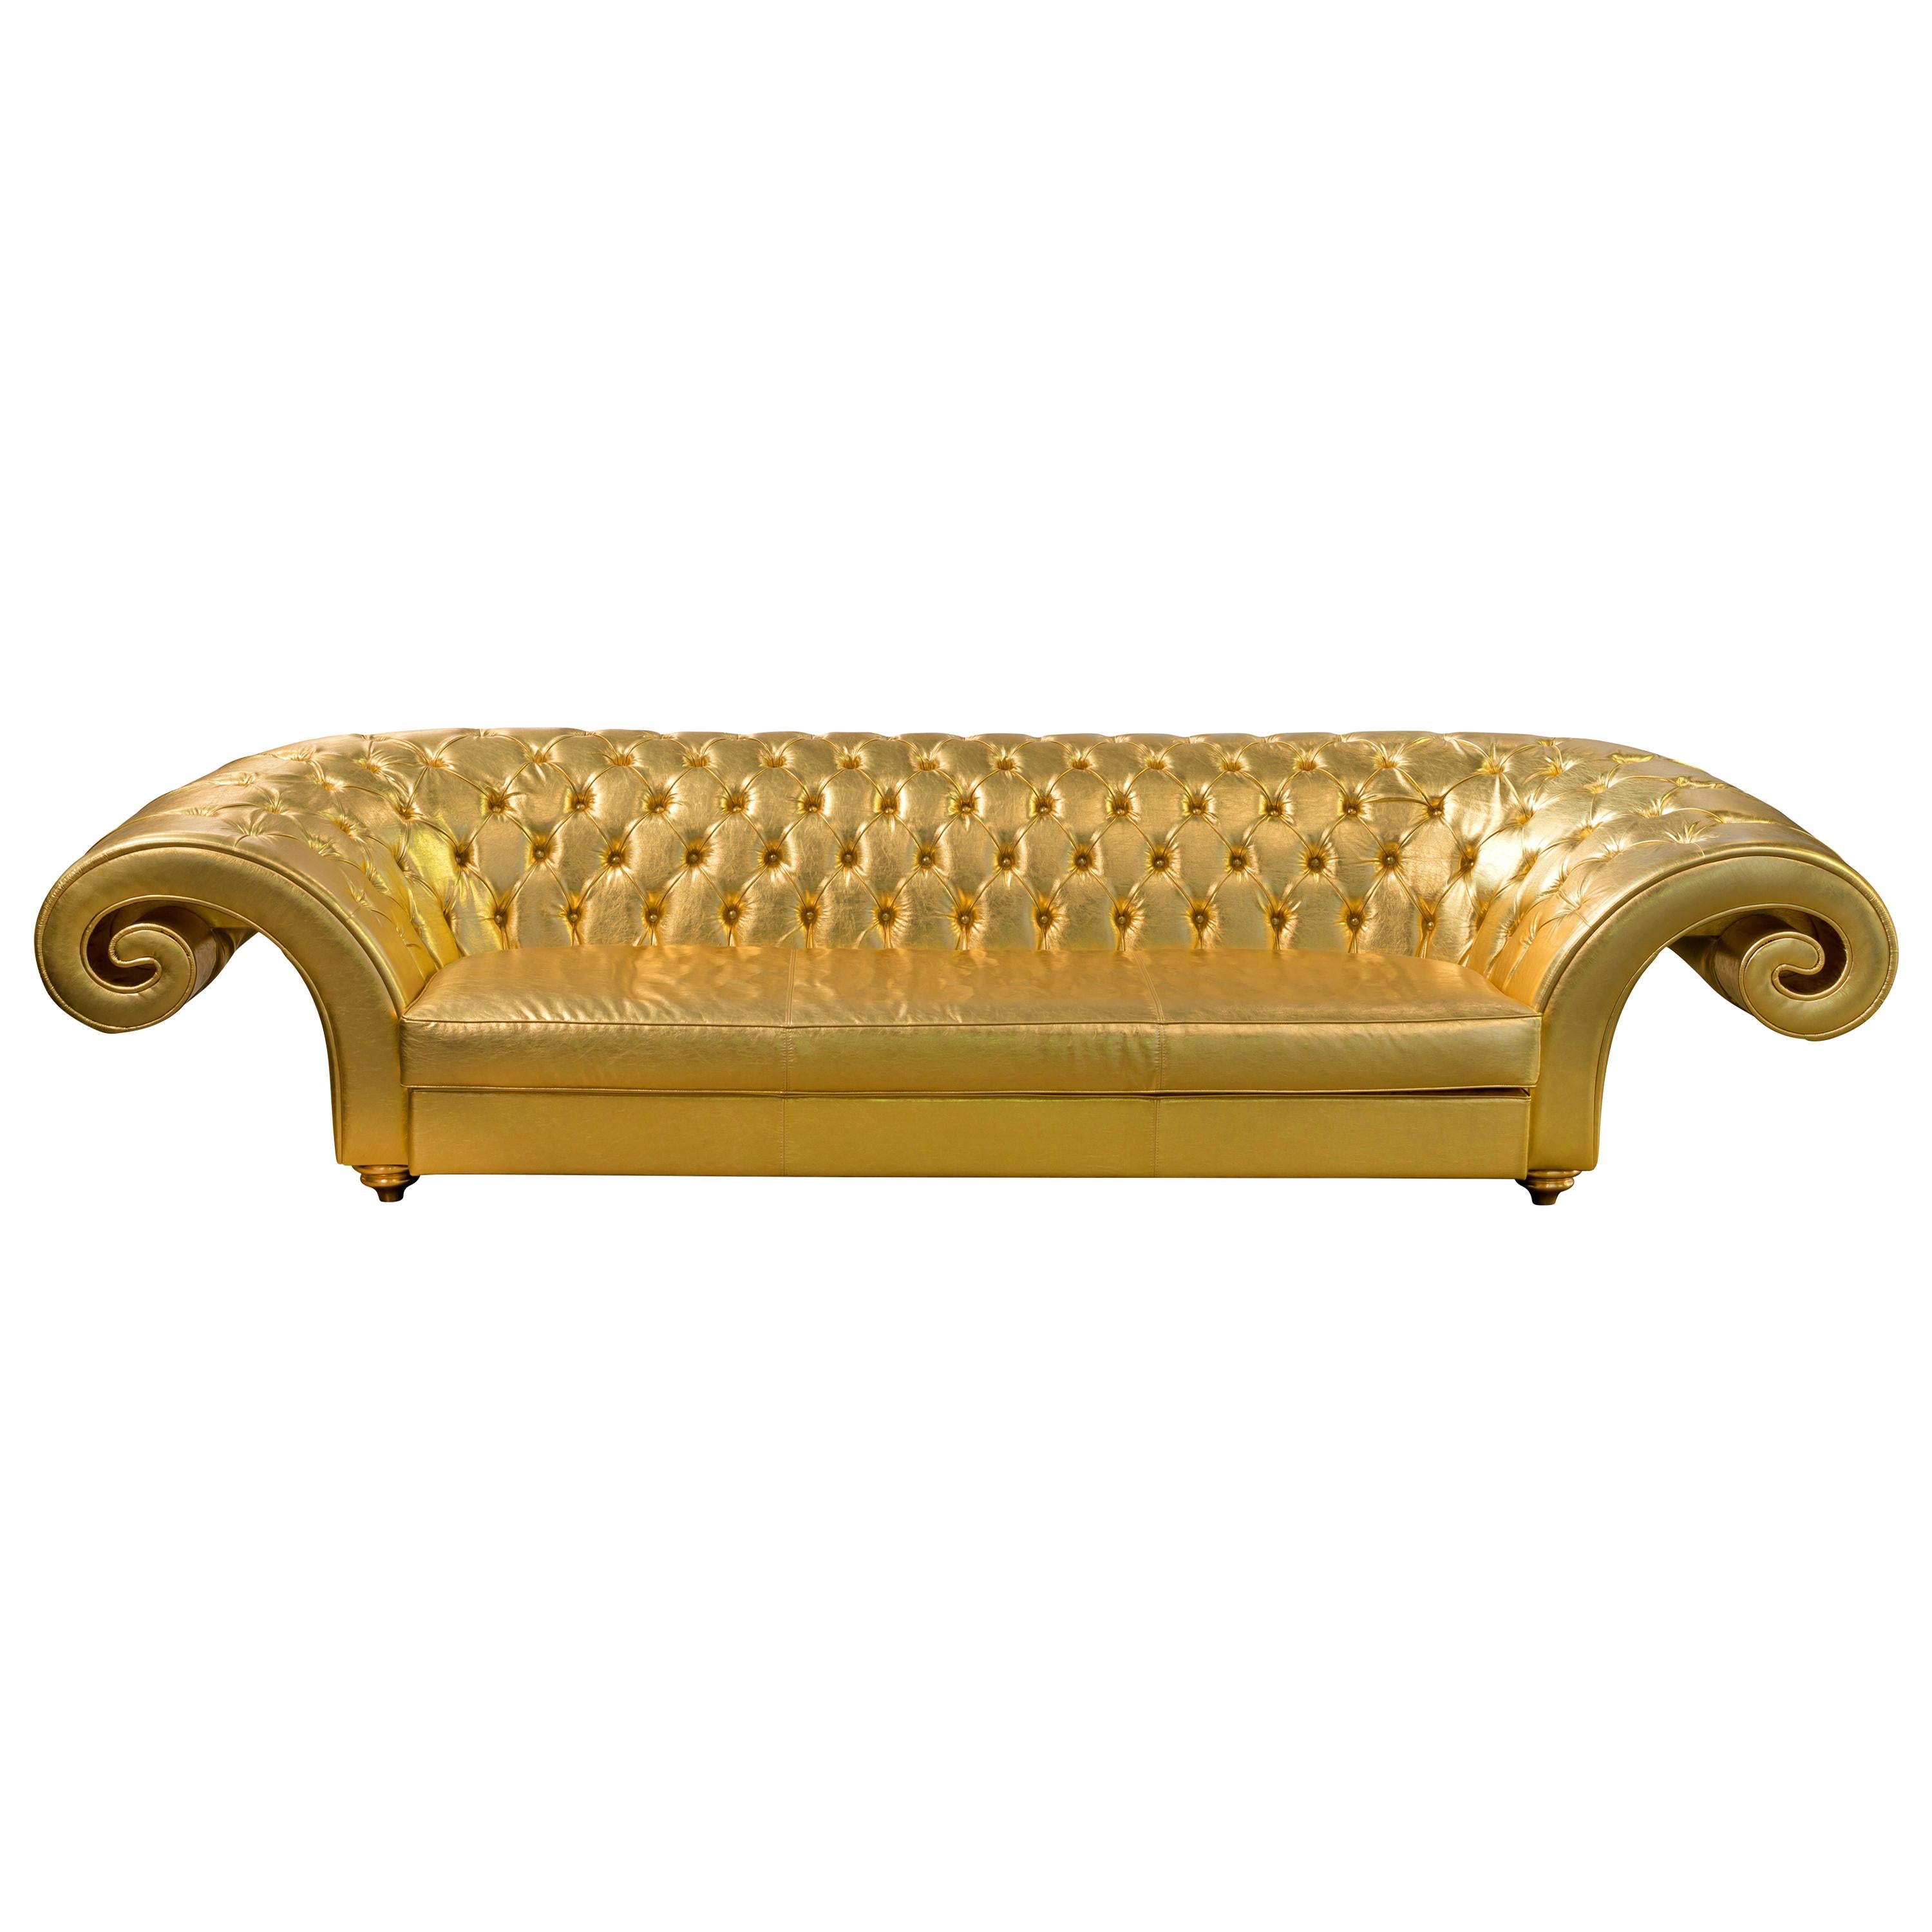 Sofa Versailles Capitonné Backrest, Gold Leather Furniture